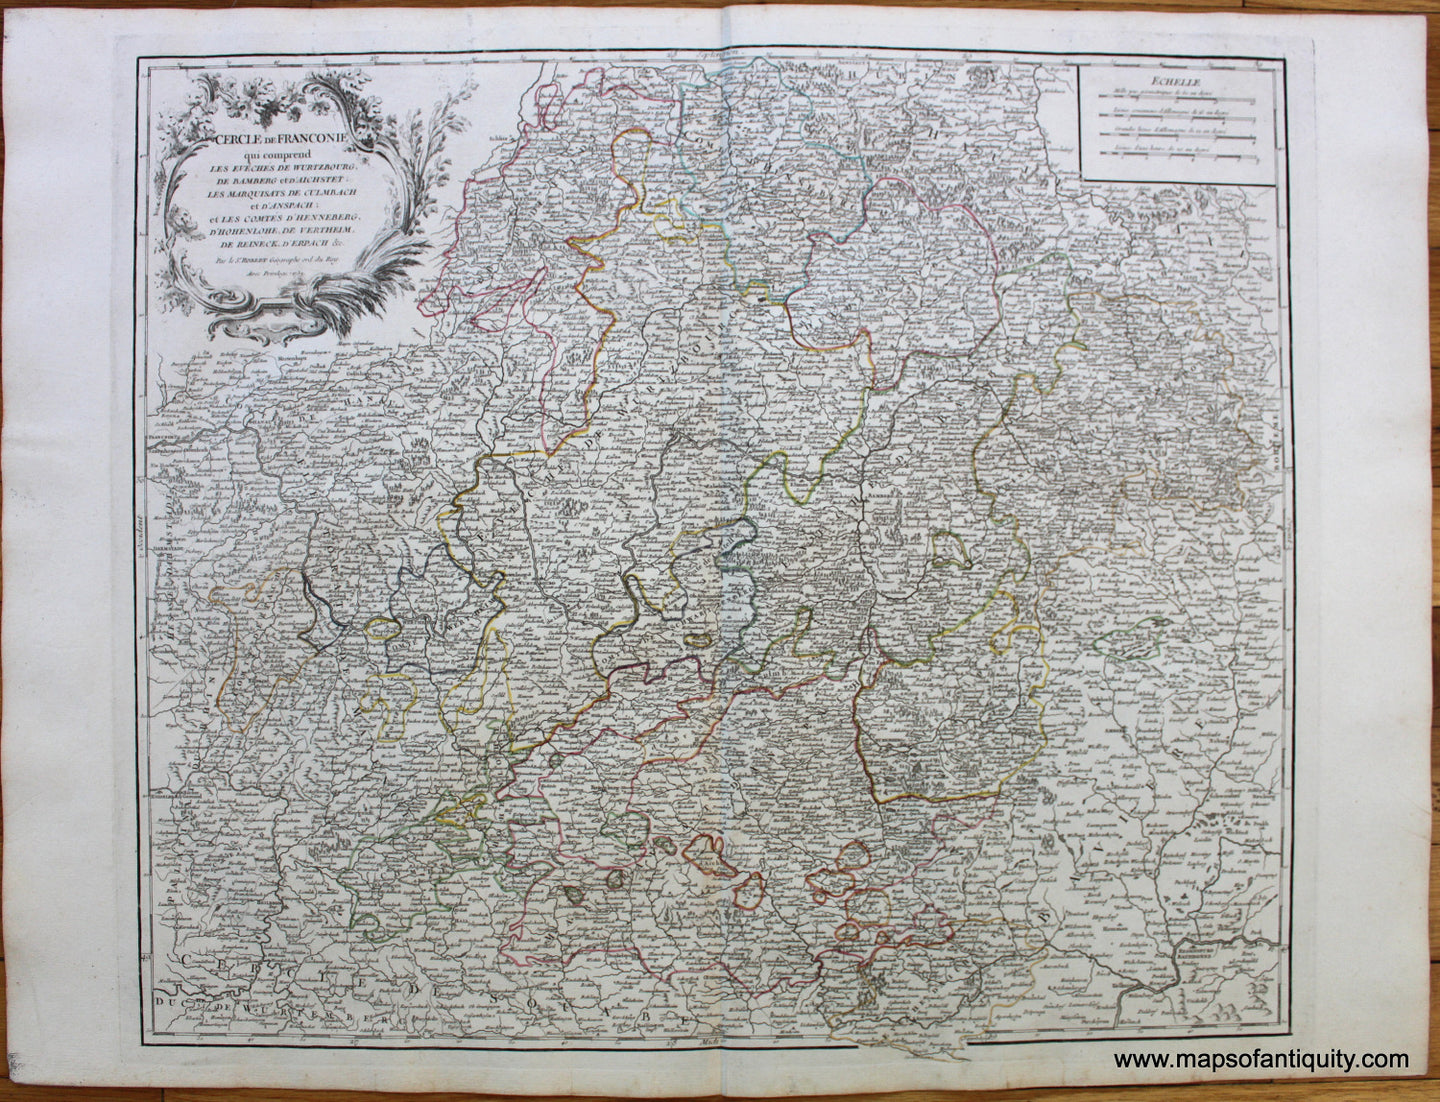 Antique-Hand-Colored-Map-Cercle-de-Franconie-Europe--1757-Vaugondy-Maps-Of-Antiquity